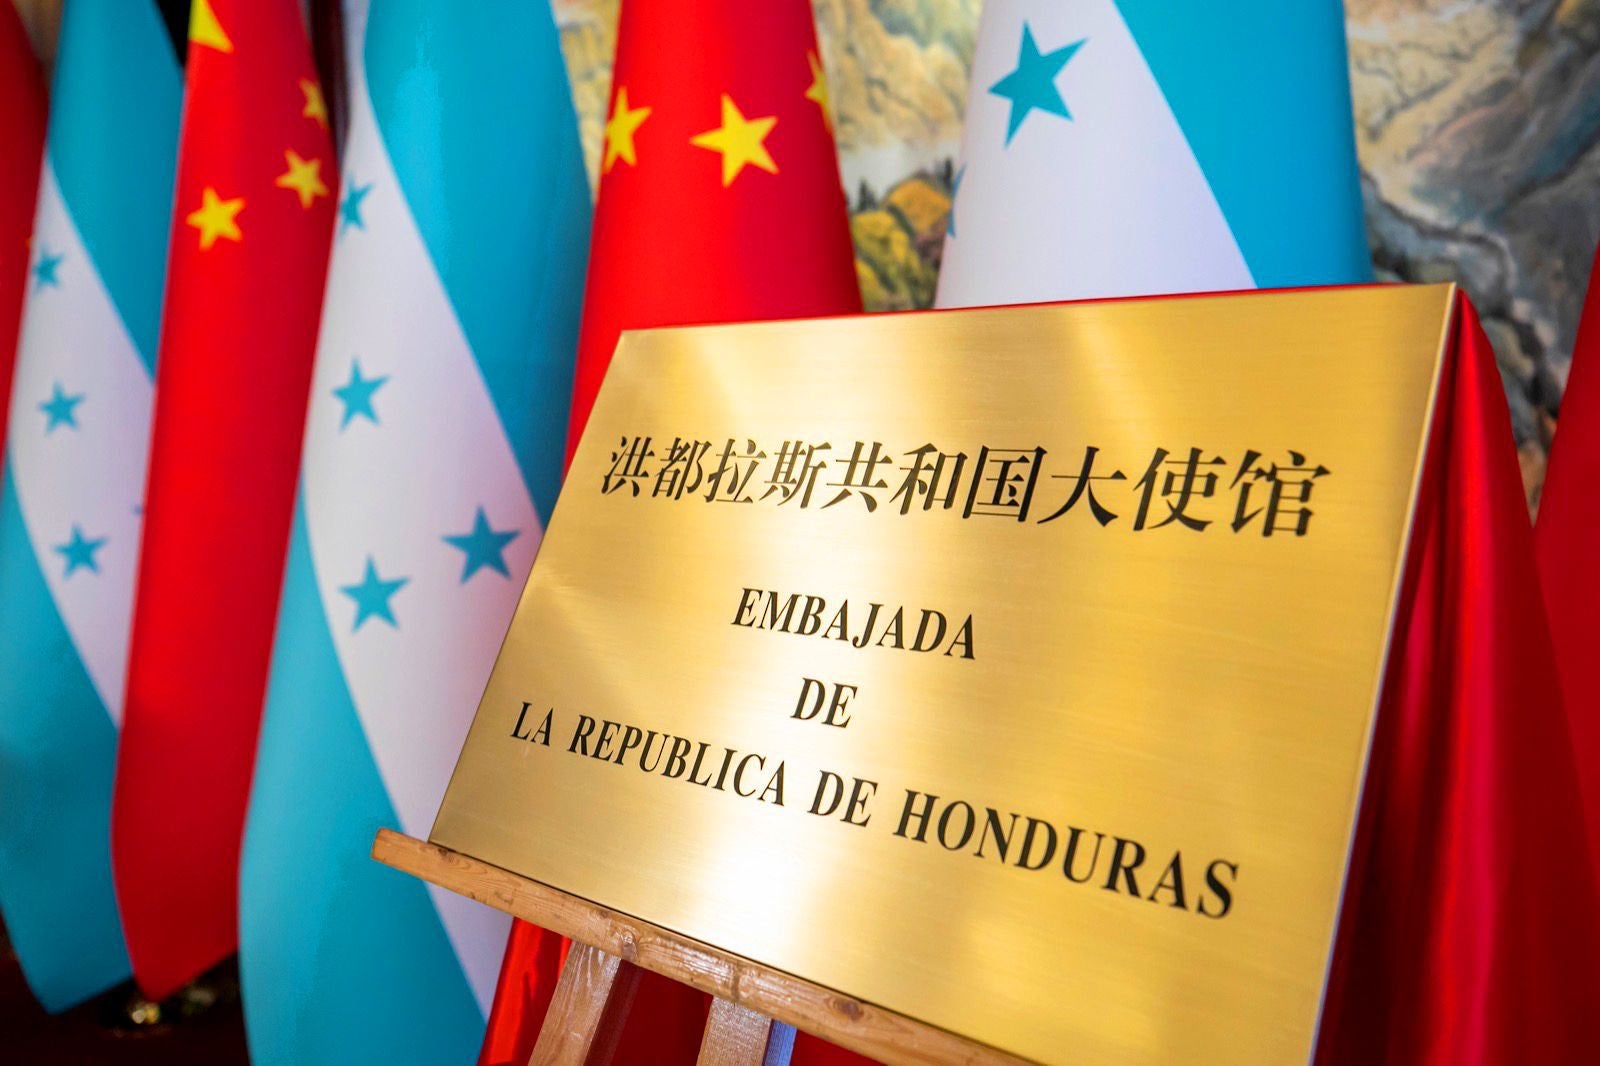 Placa alusiva a la inauguración de la nueva sede diplomática de Honduras en Pekín.